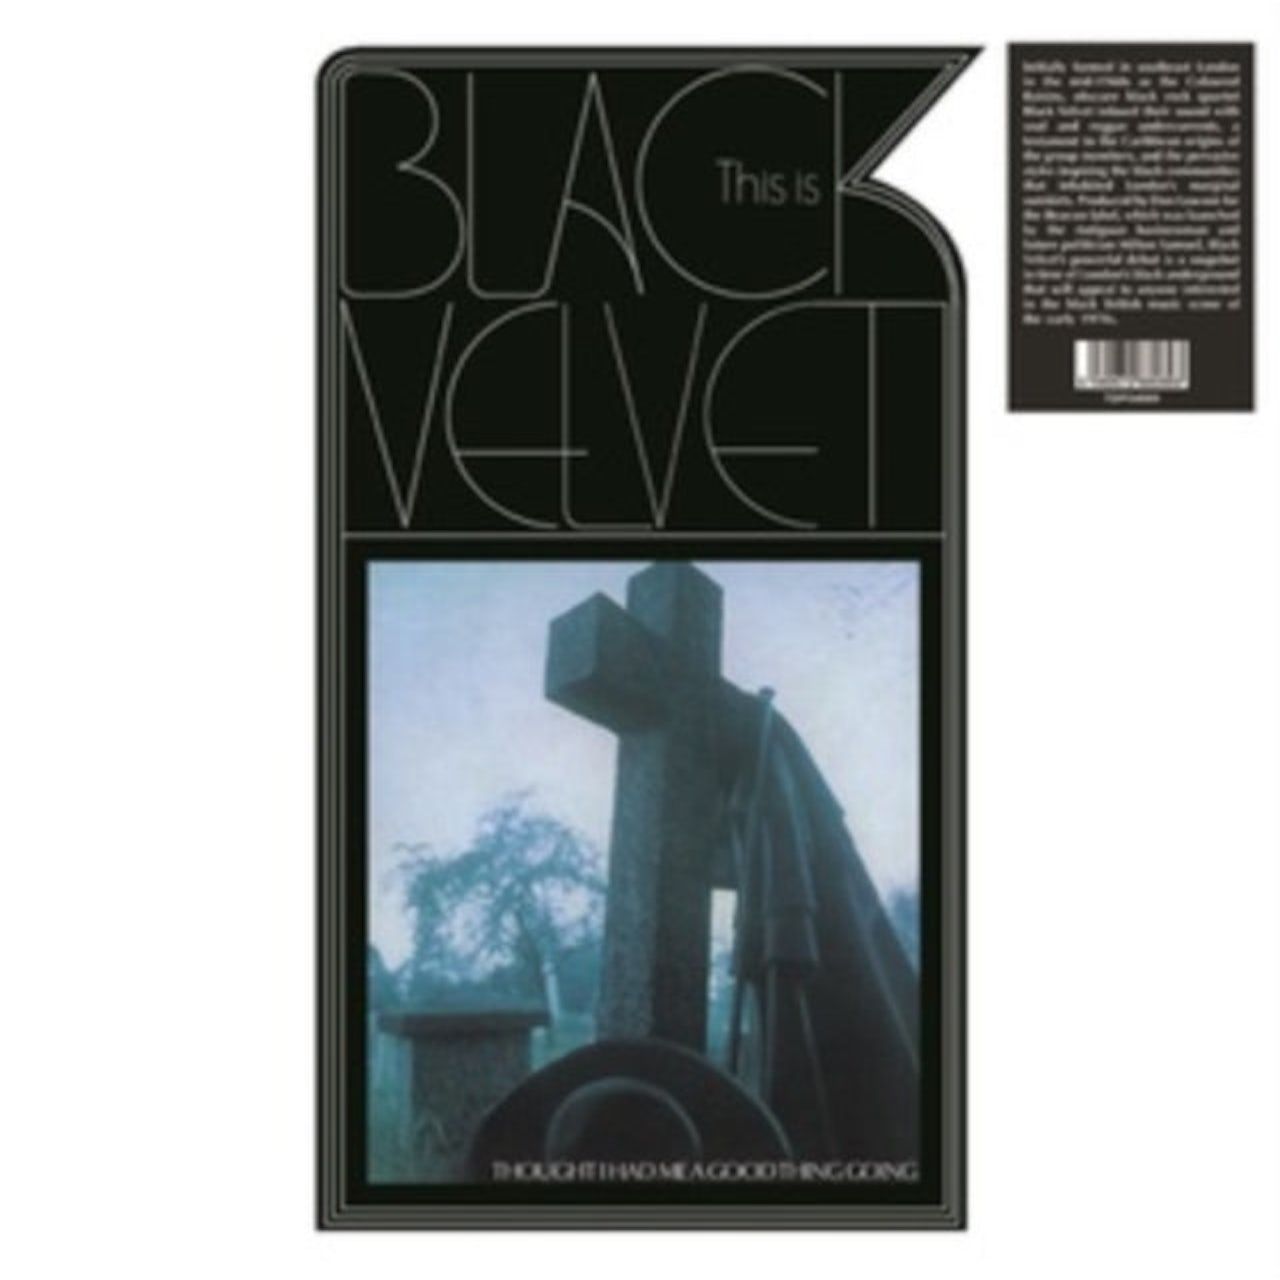 black velvet this is black velvet lp 2023 black виниловая пластинка 5060672880893, Виниловая пластинка Black Velvet, This Is Black Velvet